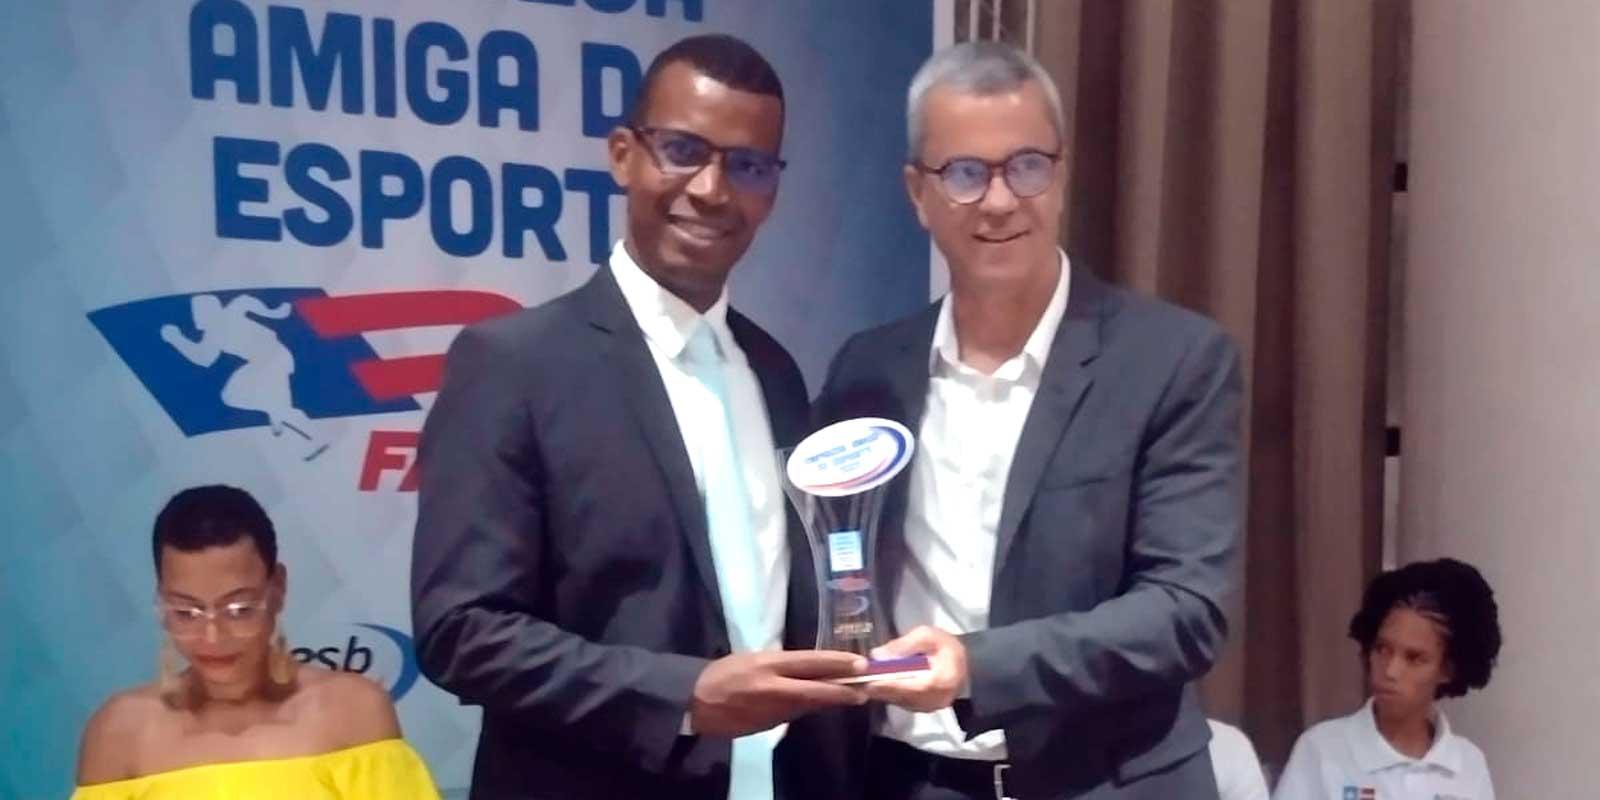 Cambuí Supermercados e Chocosul Distribuidora, recebem o título de  “Empresa amiga do Esporte” do Governo do estado da Bahia. 